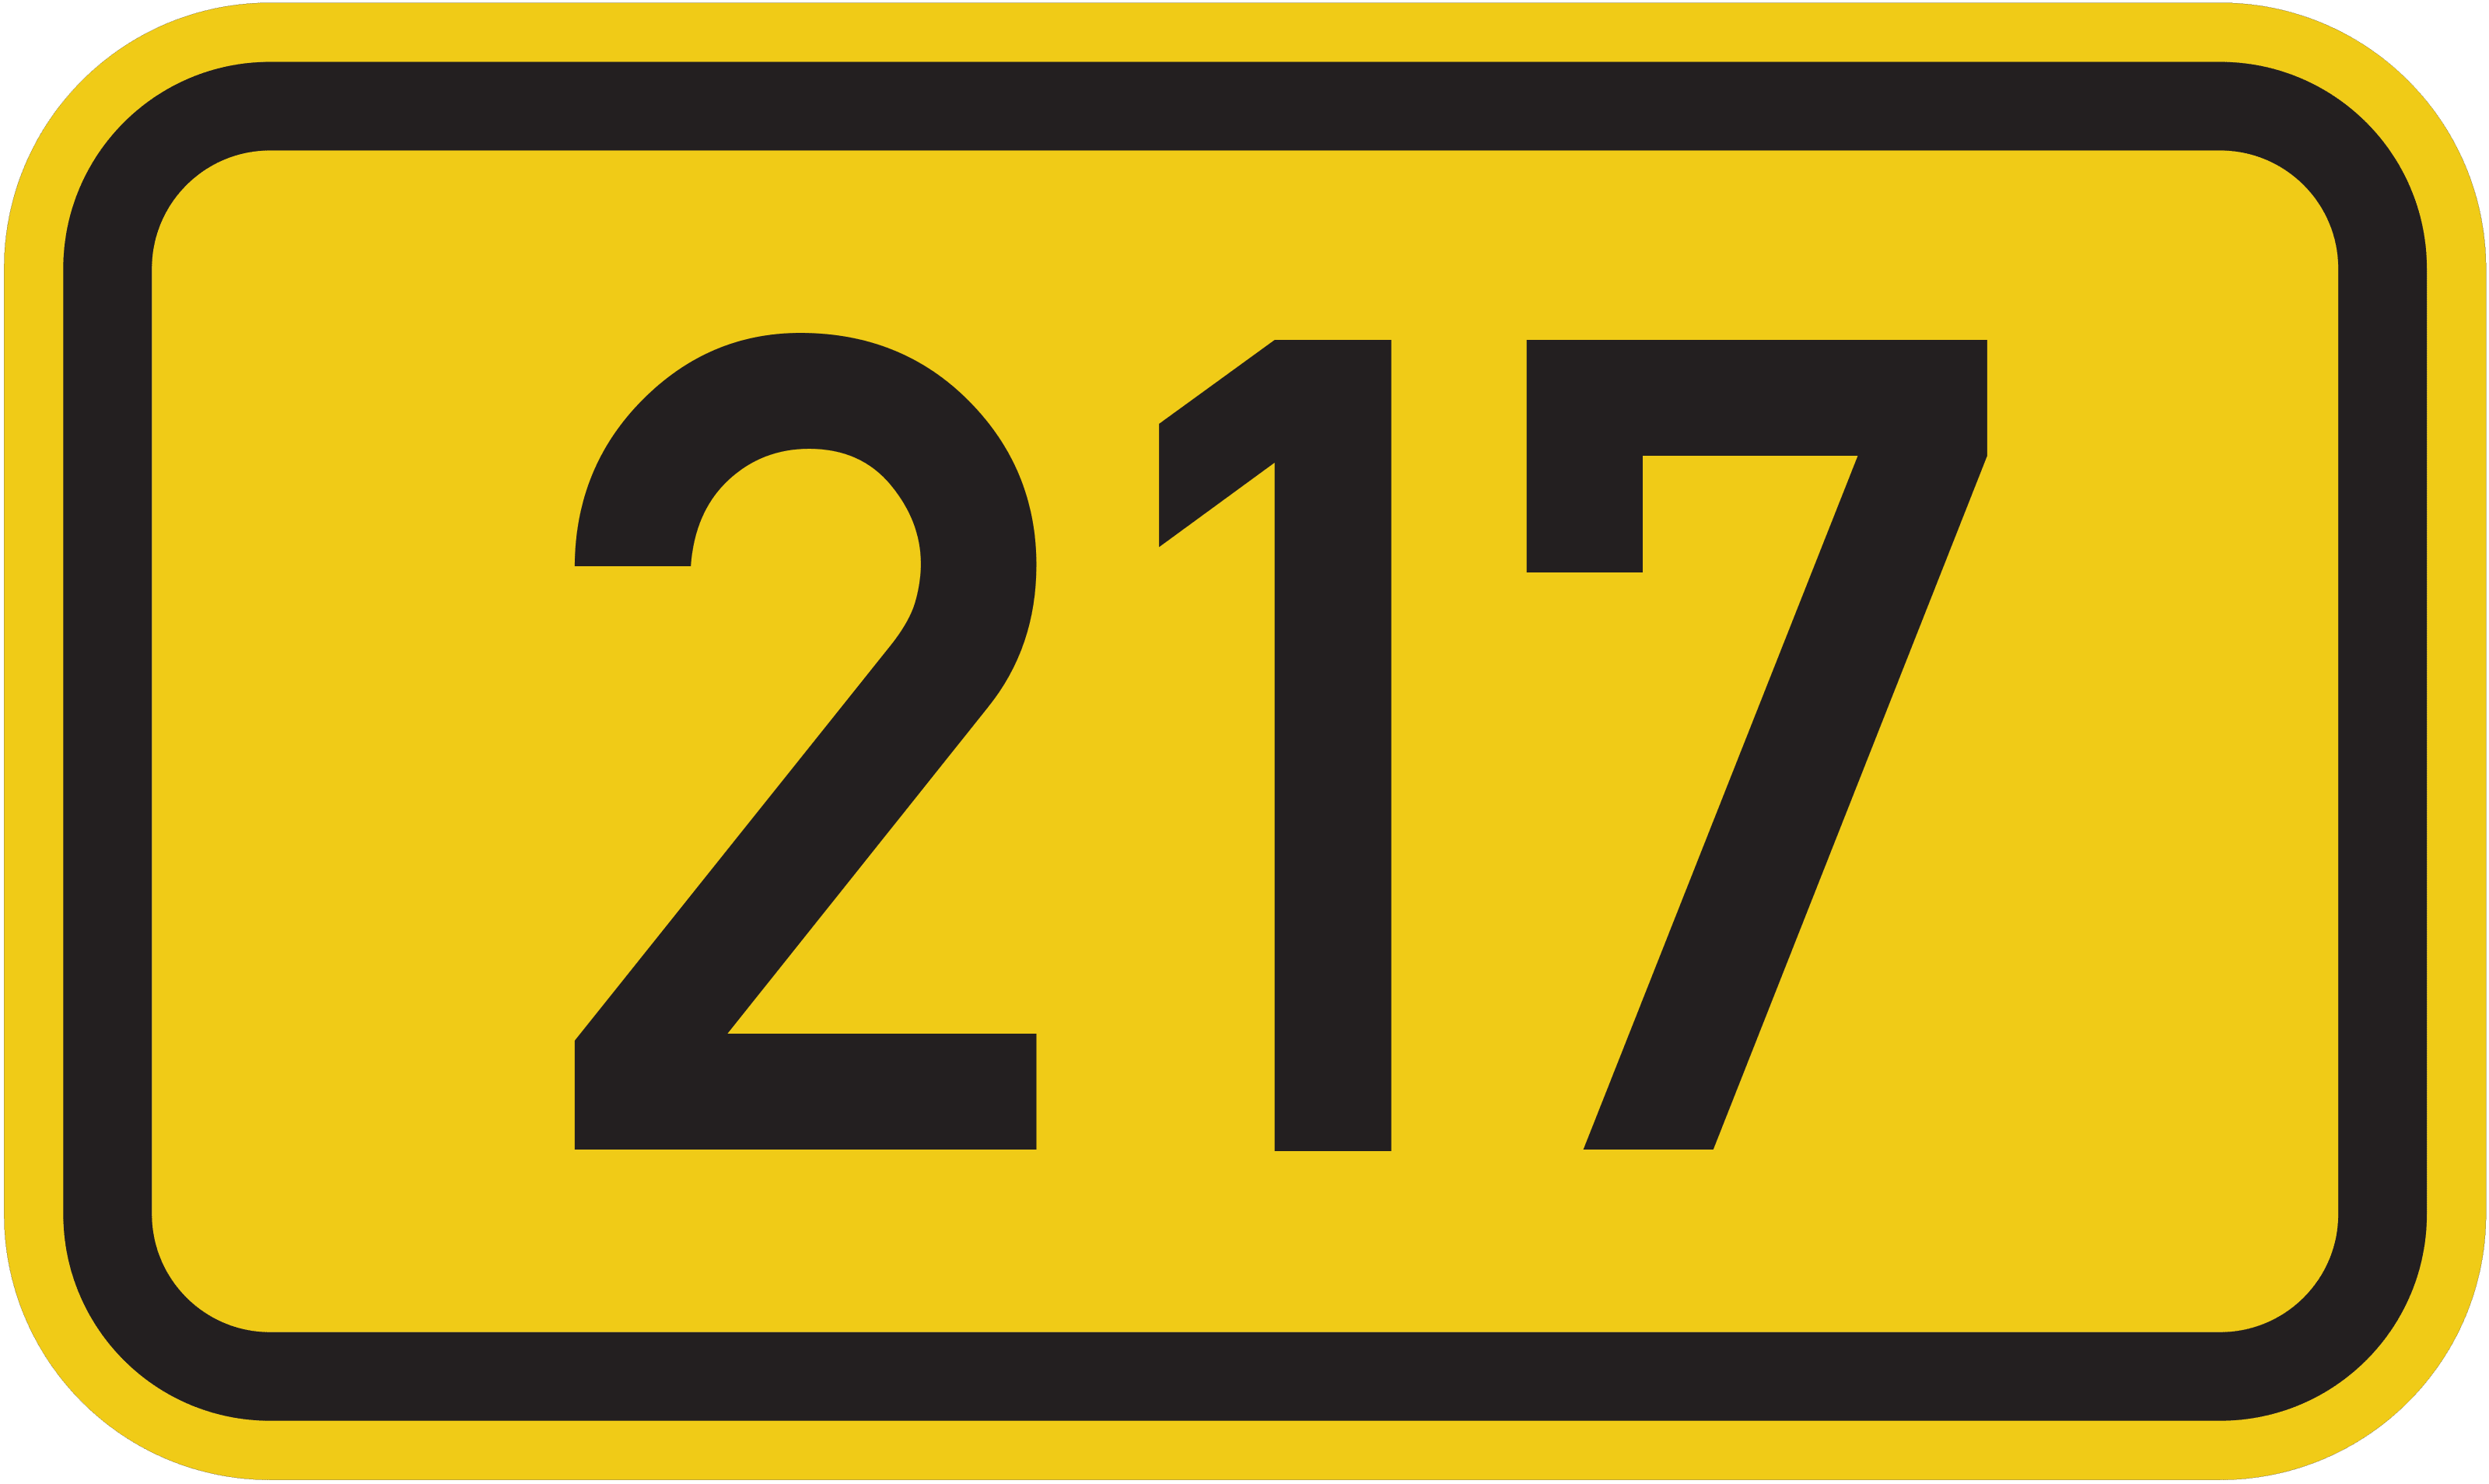 Bundesstraße B 217